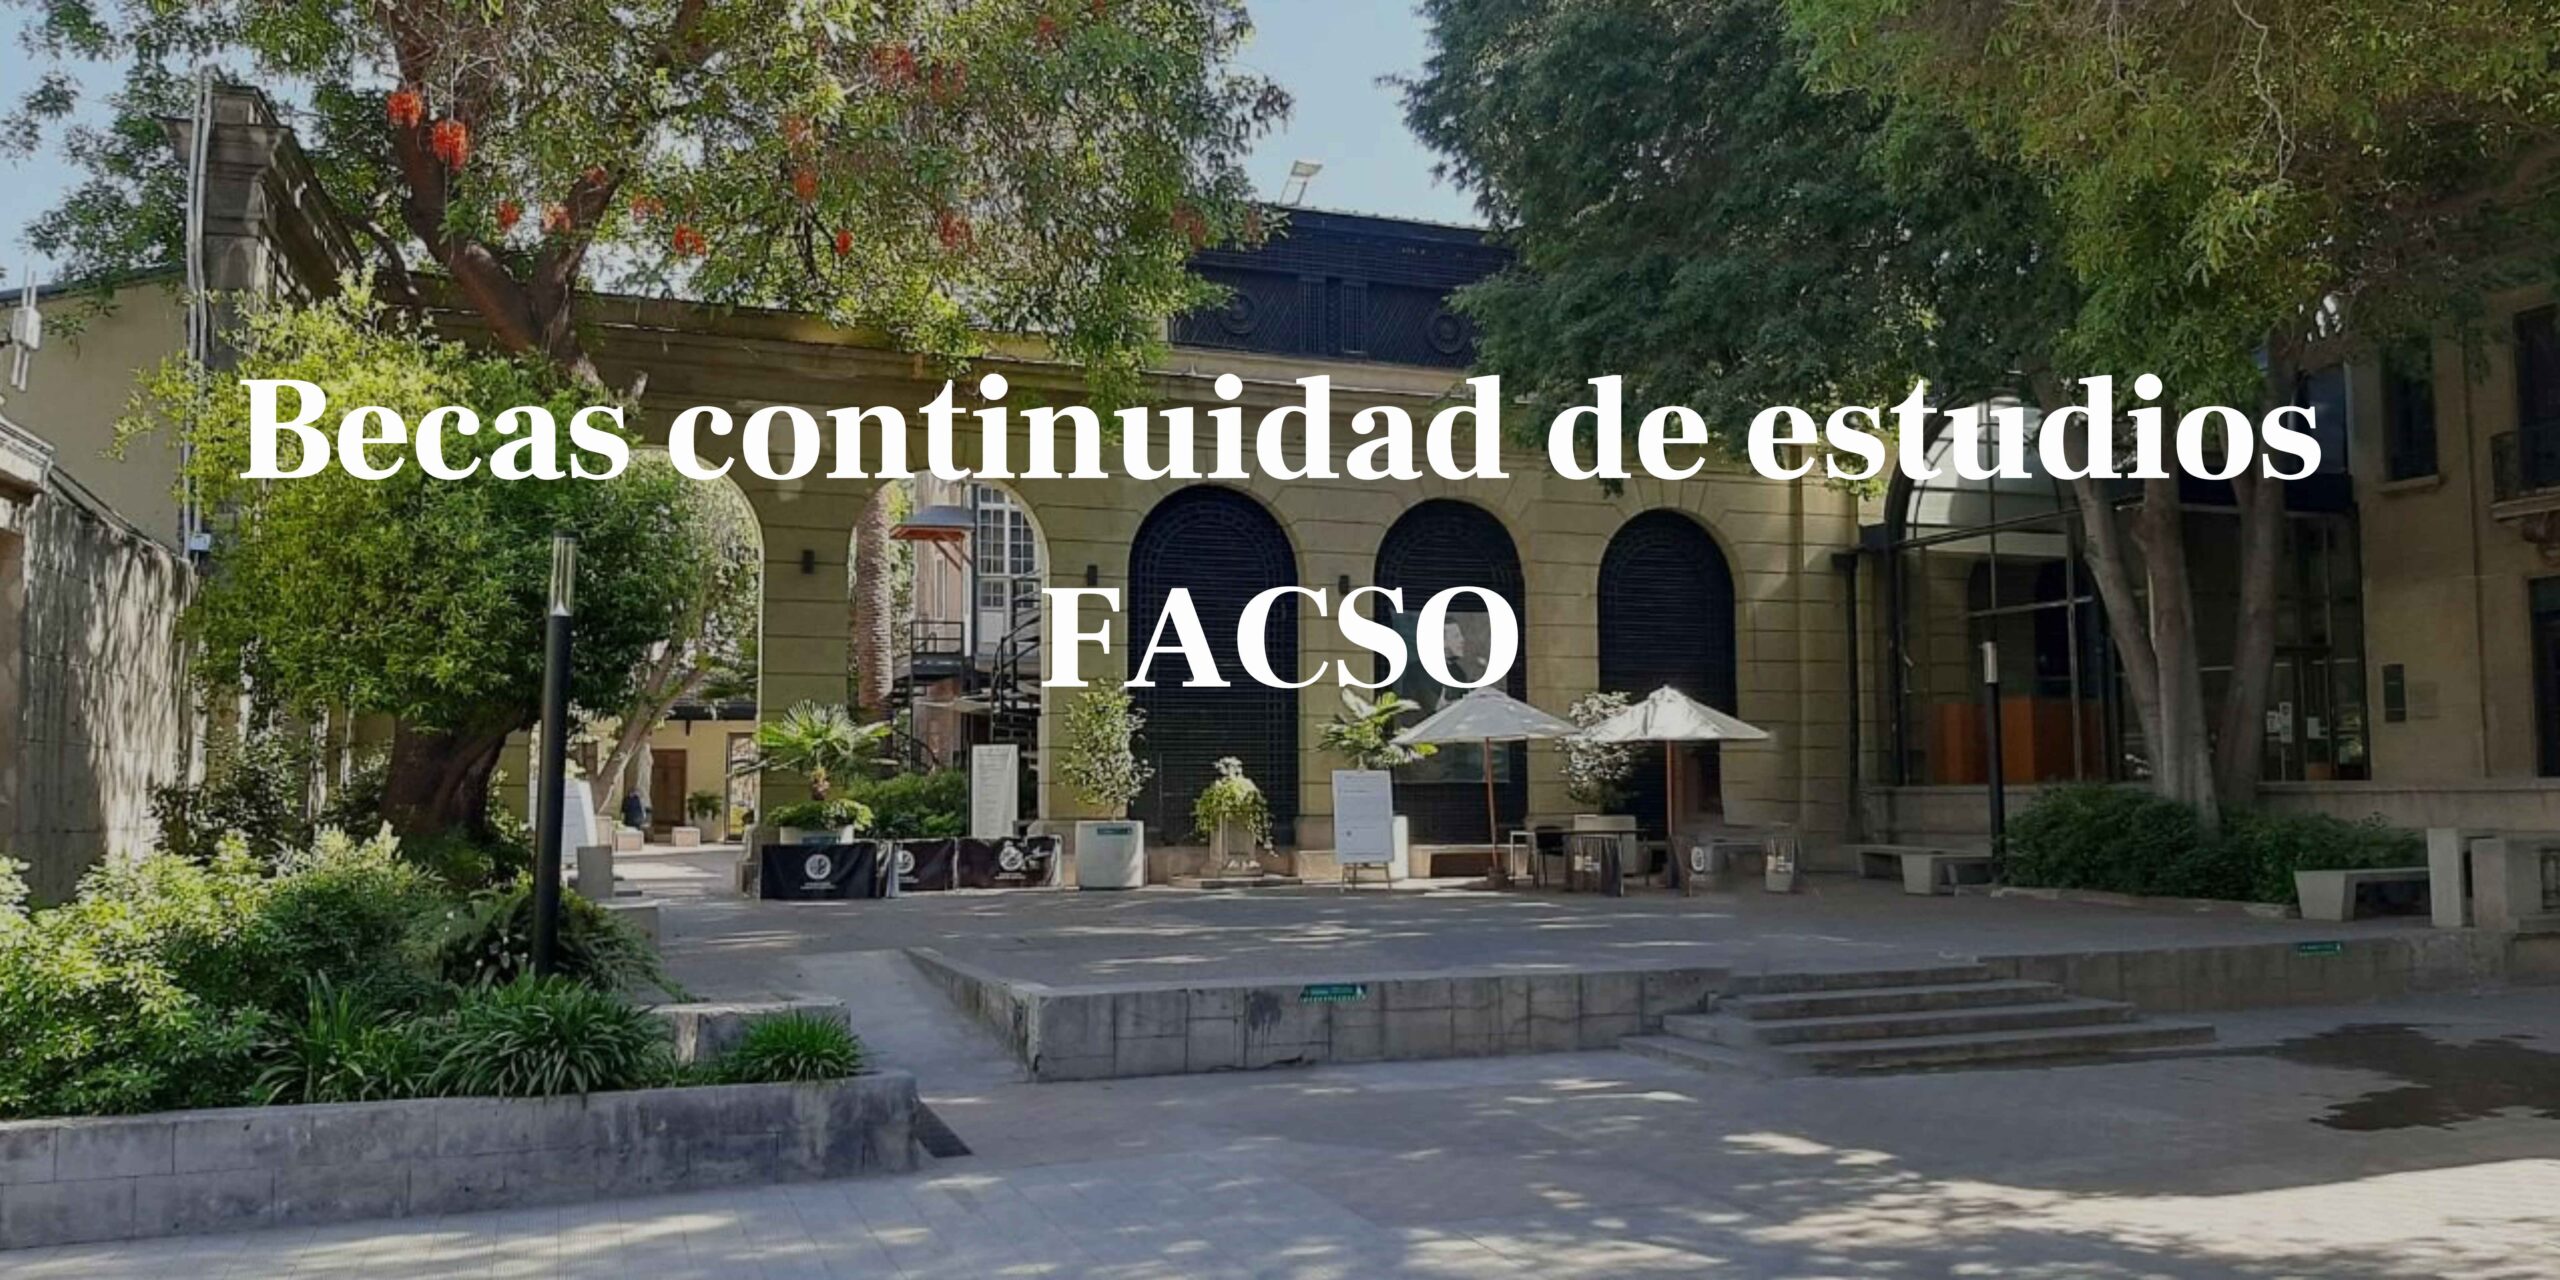 Becas continuidad de estudios FACSO